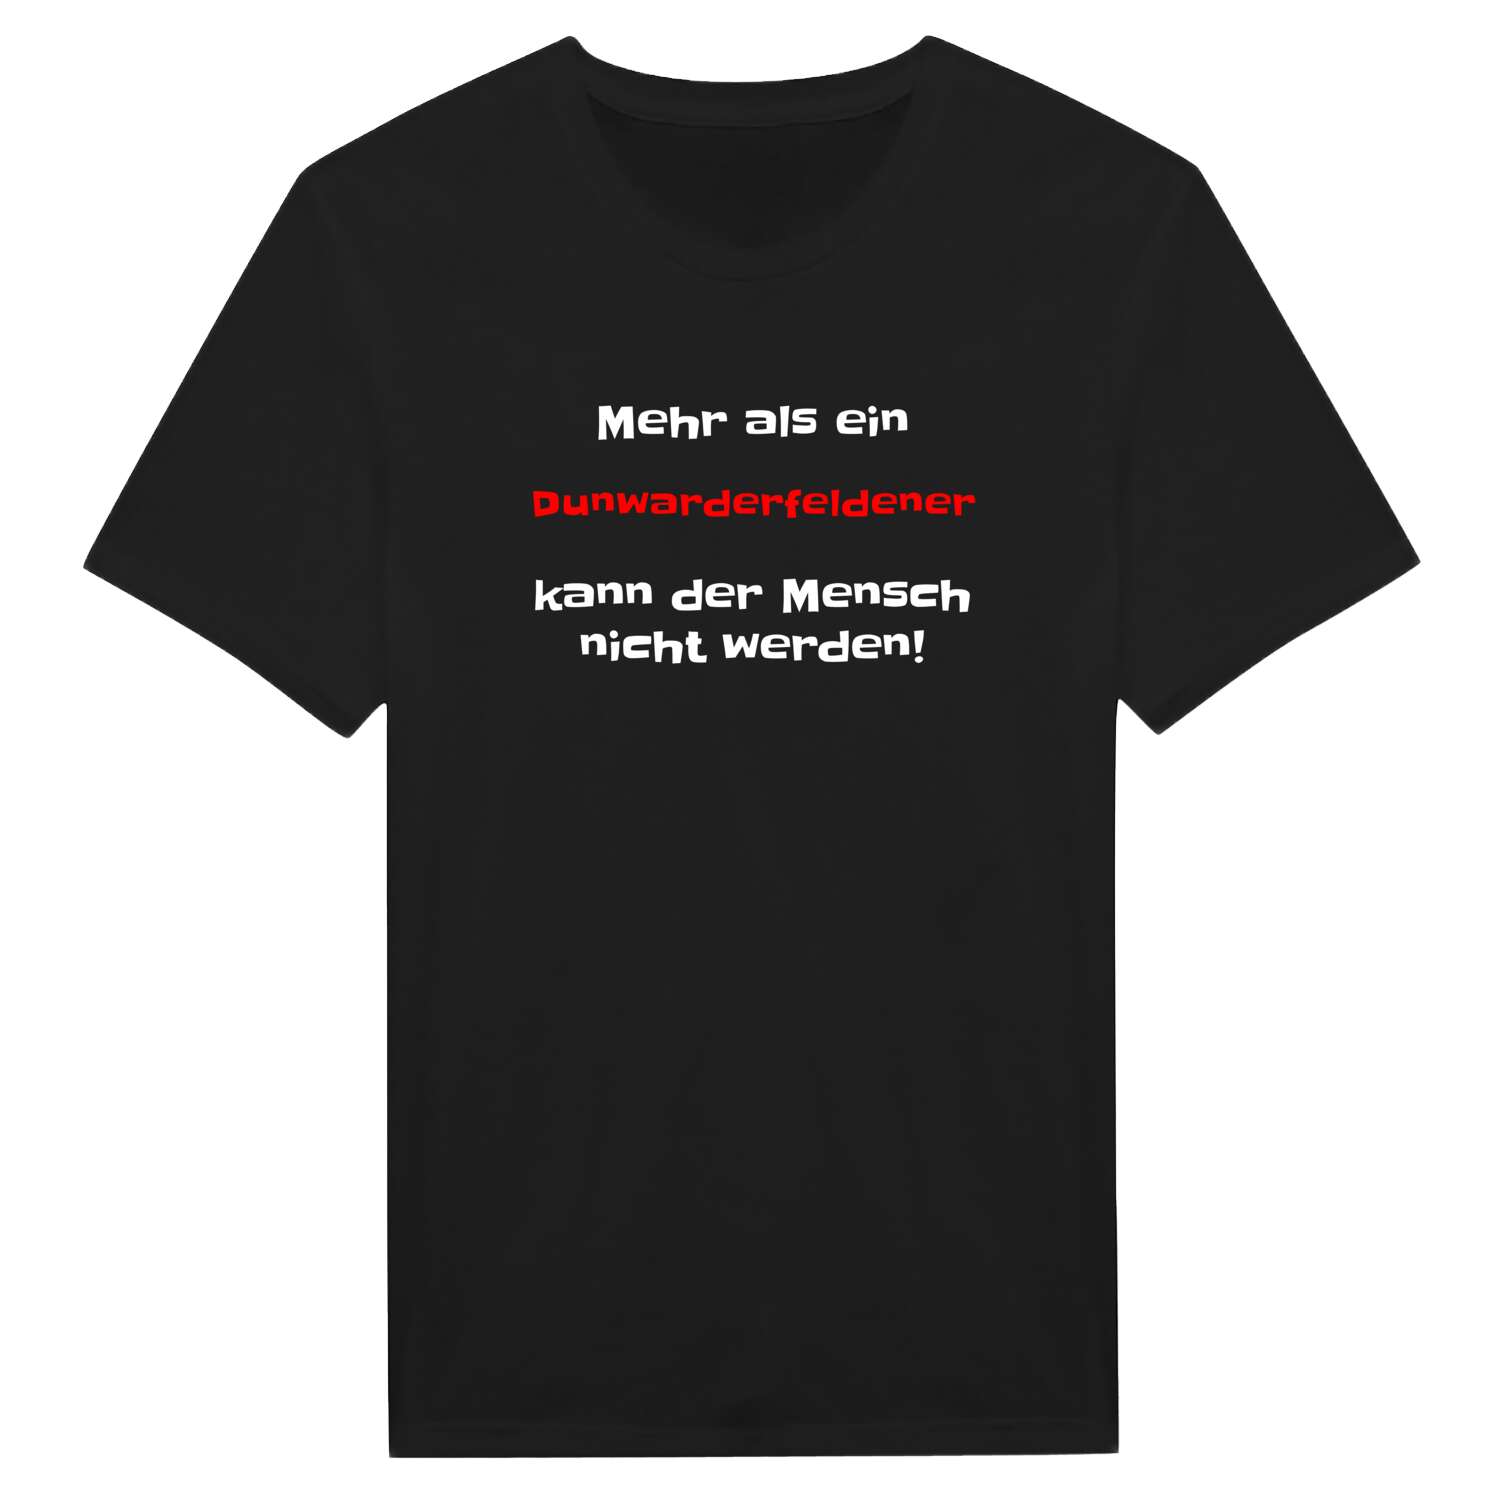 Dunwarderfelde T-Shirt »Mehr als ein«